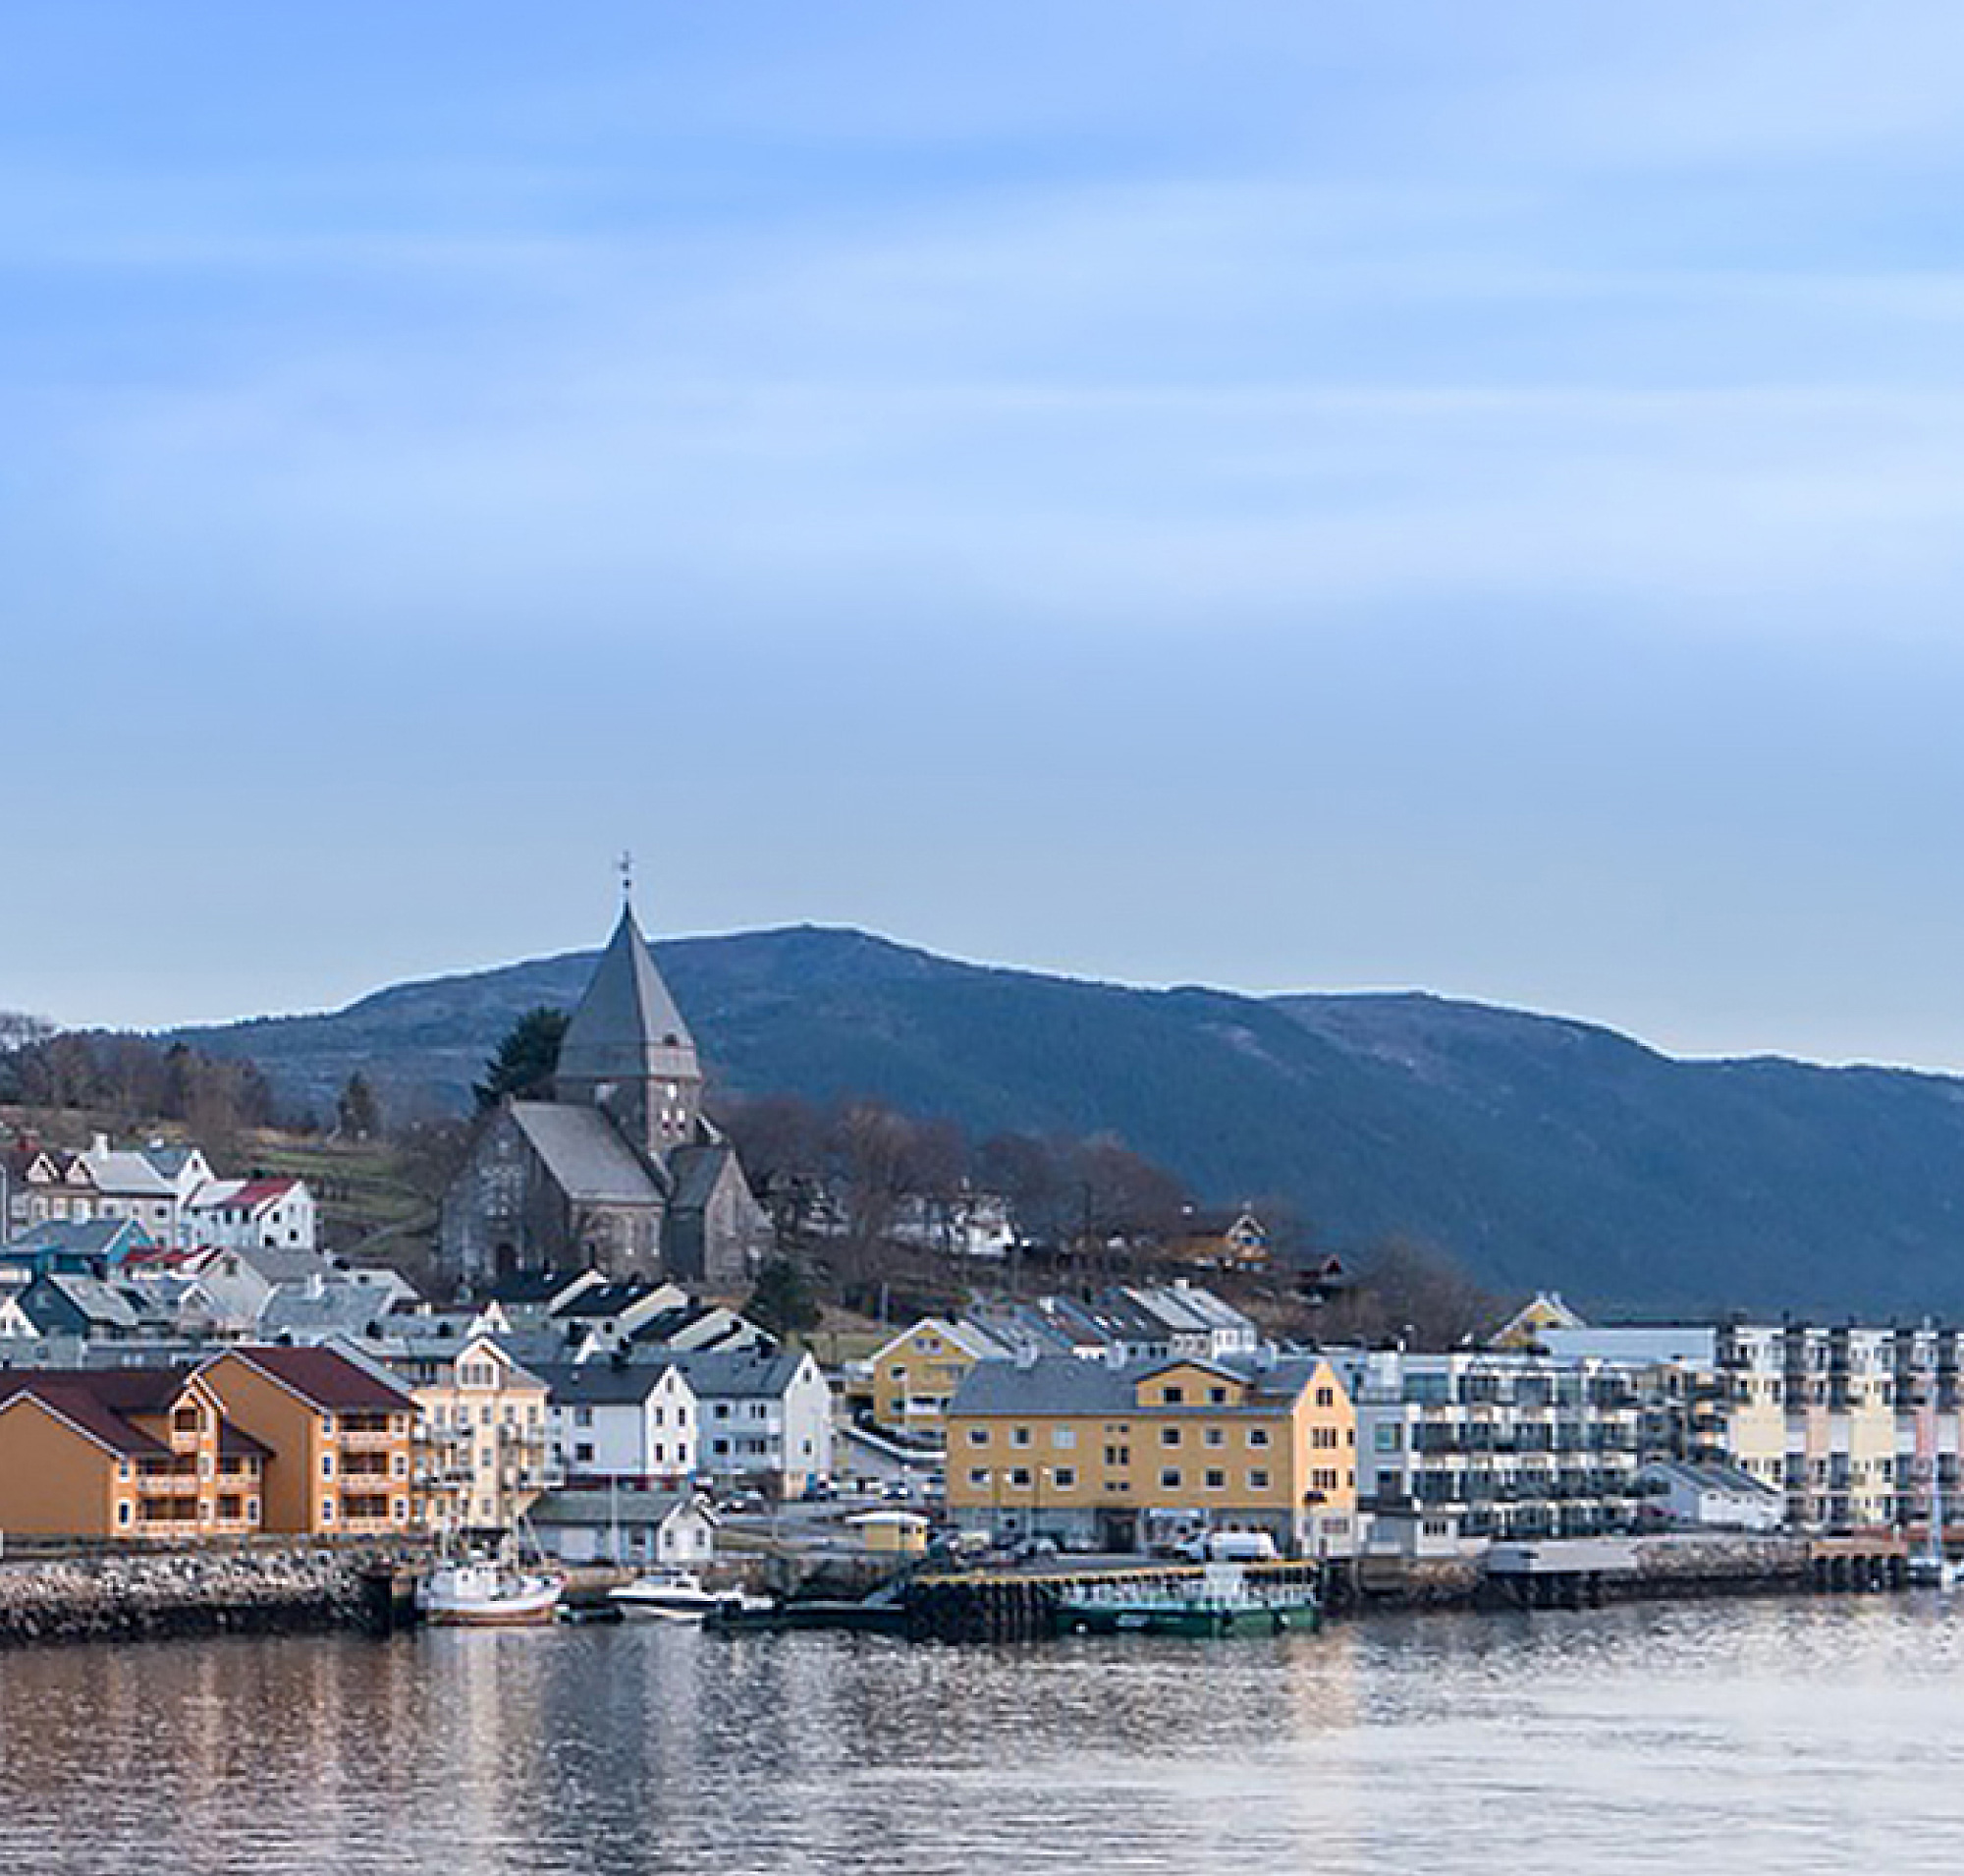 Malowniczy widok na nadmorskie norweskie miasteczko z kolorowymi budynkami i widocznym kościołem na tle wzgórz 